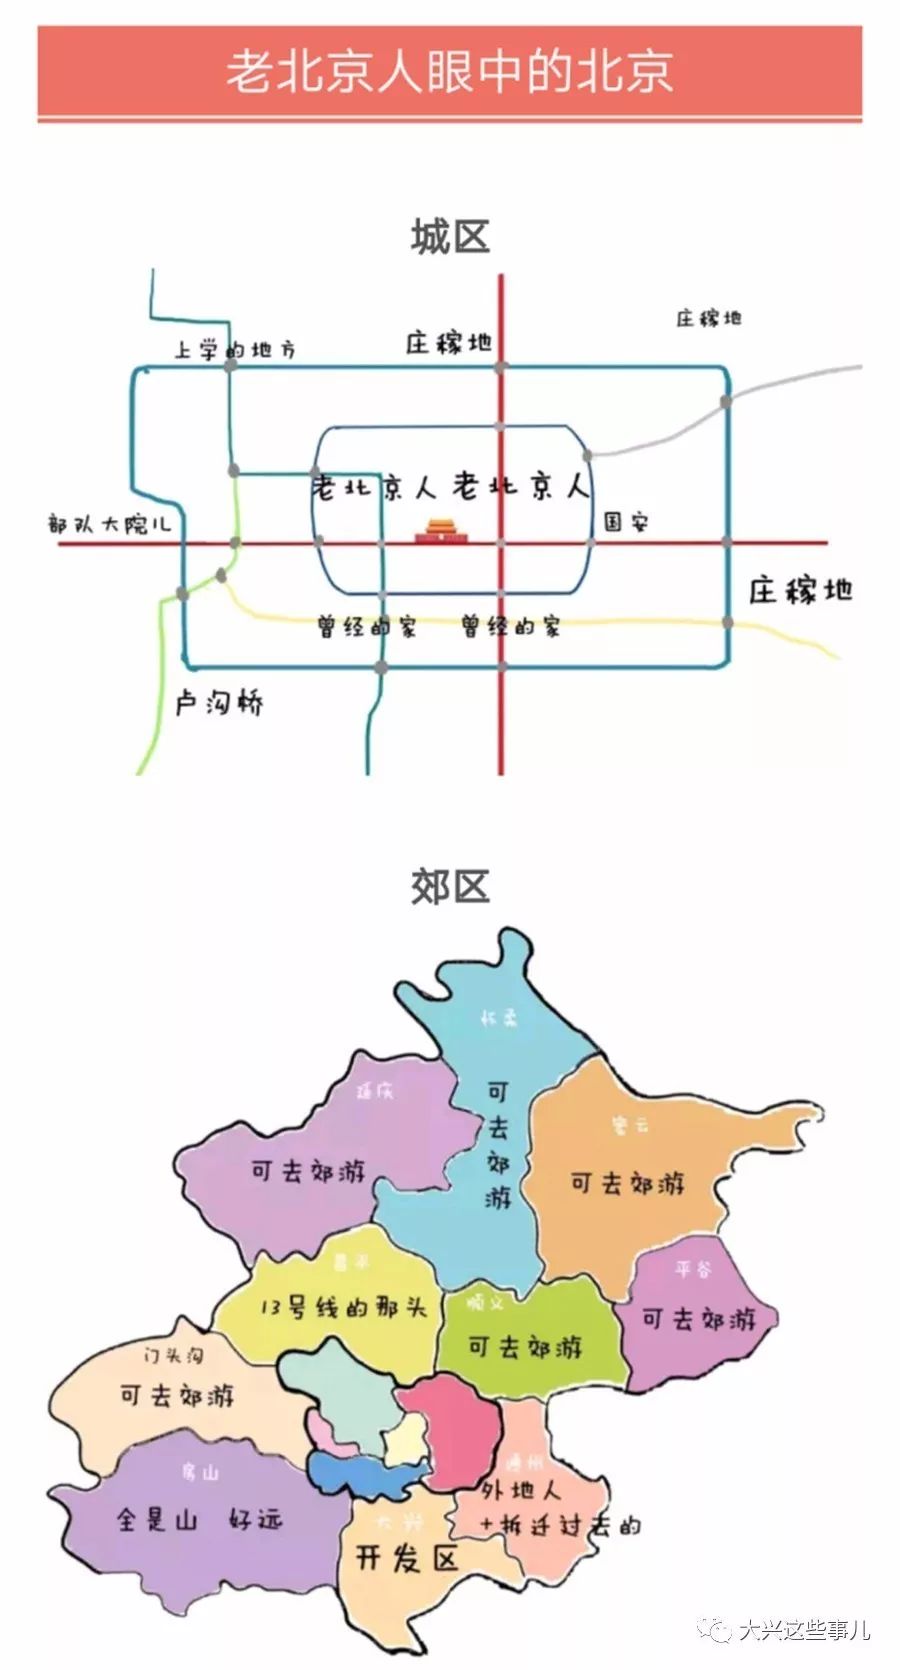 【有点意思】人们心中的北京地图 大兴原来是这样